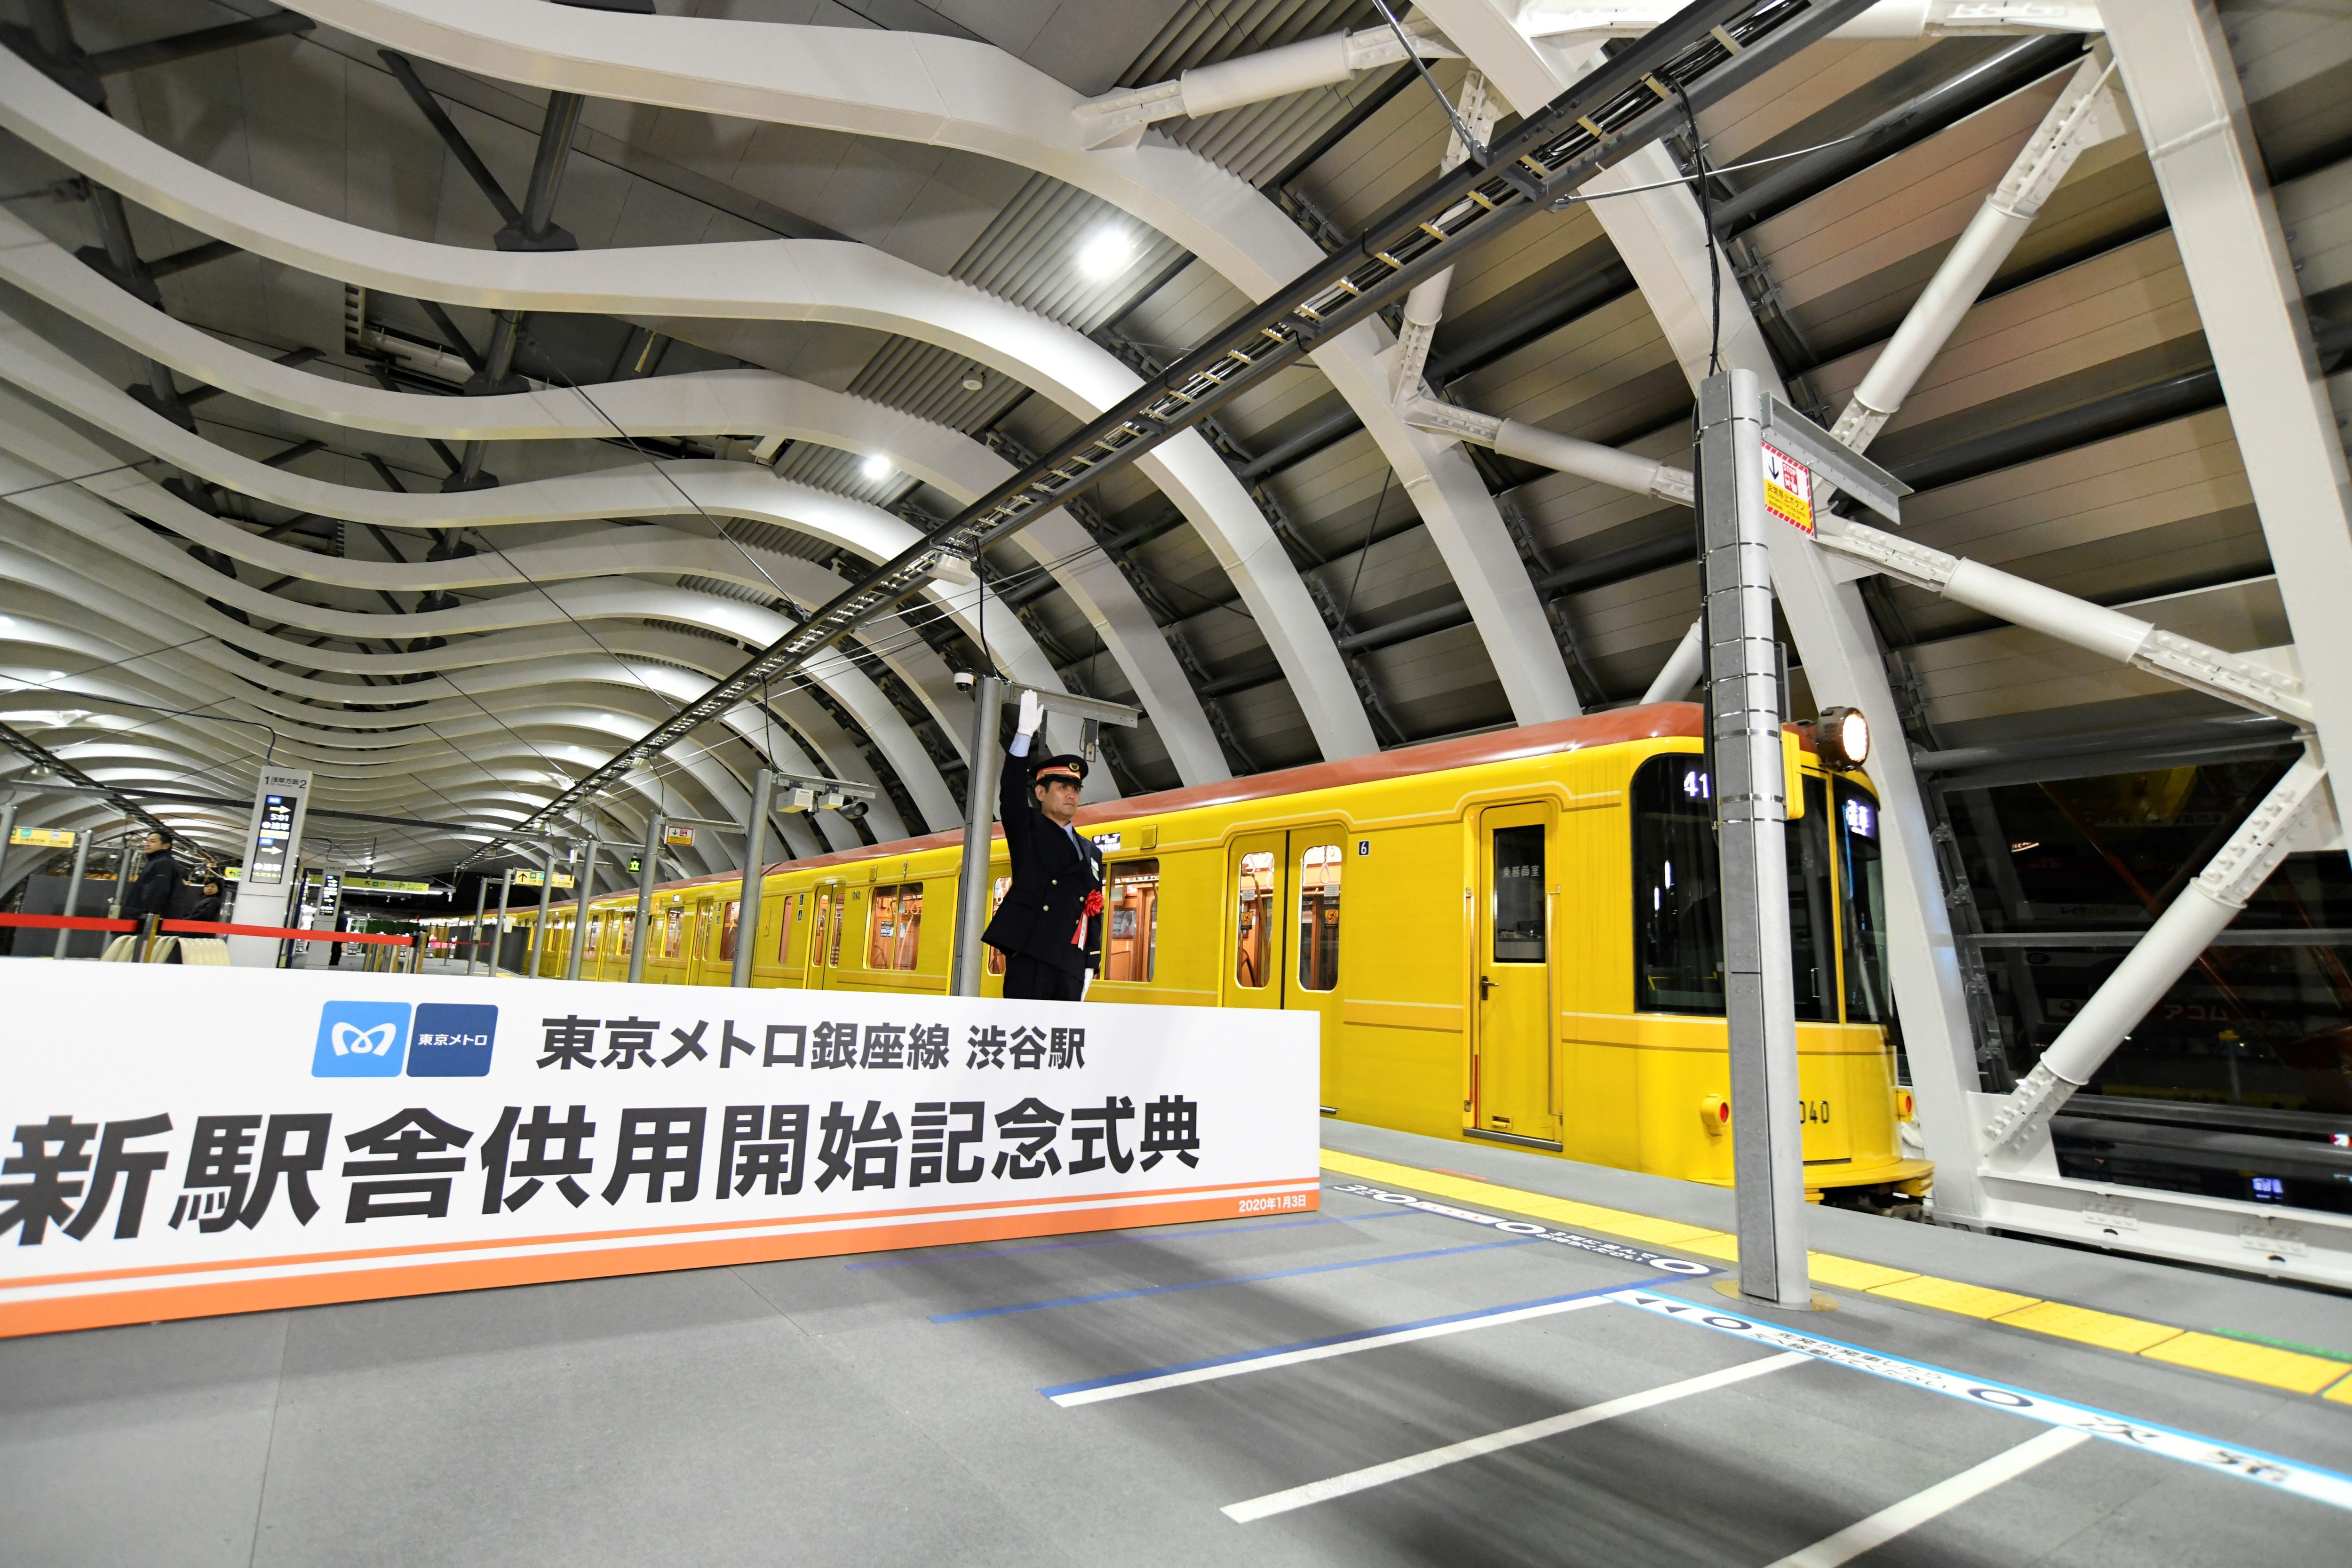 銀座線渋谷駅移設完了に鉄道ファンも歓喜 ホーム安全扉がない理由を直撃 ニュースサイトしらべぇ